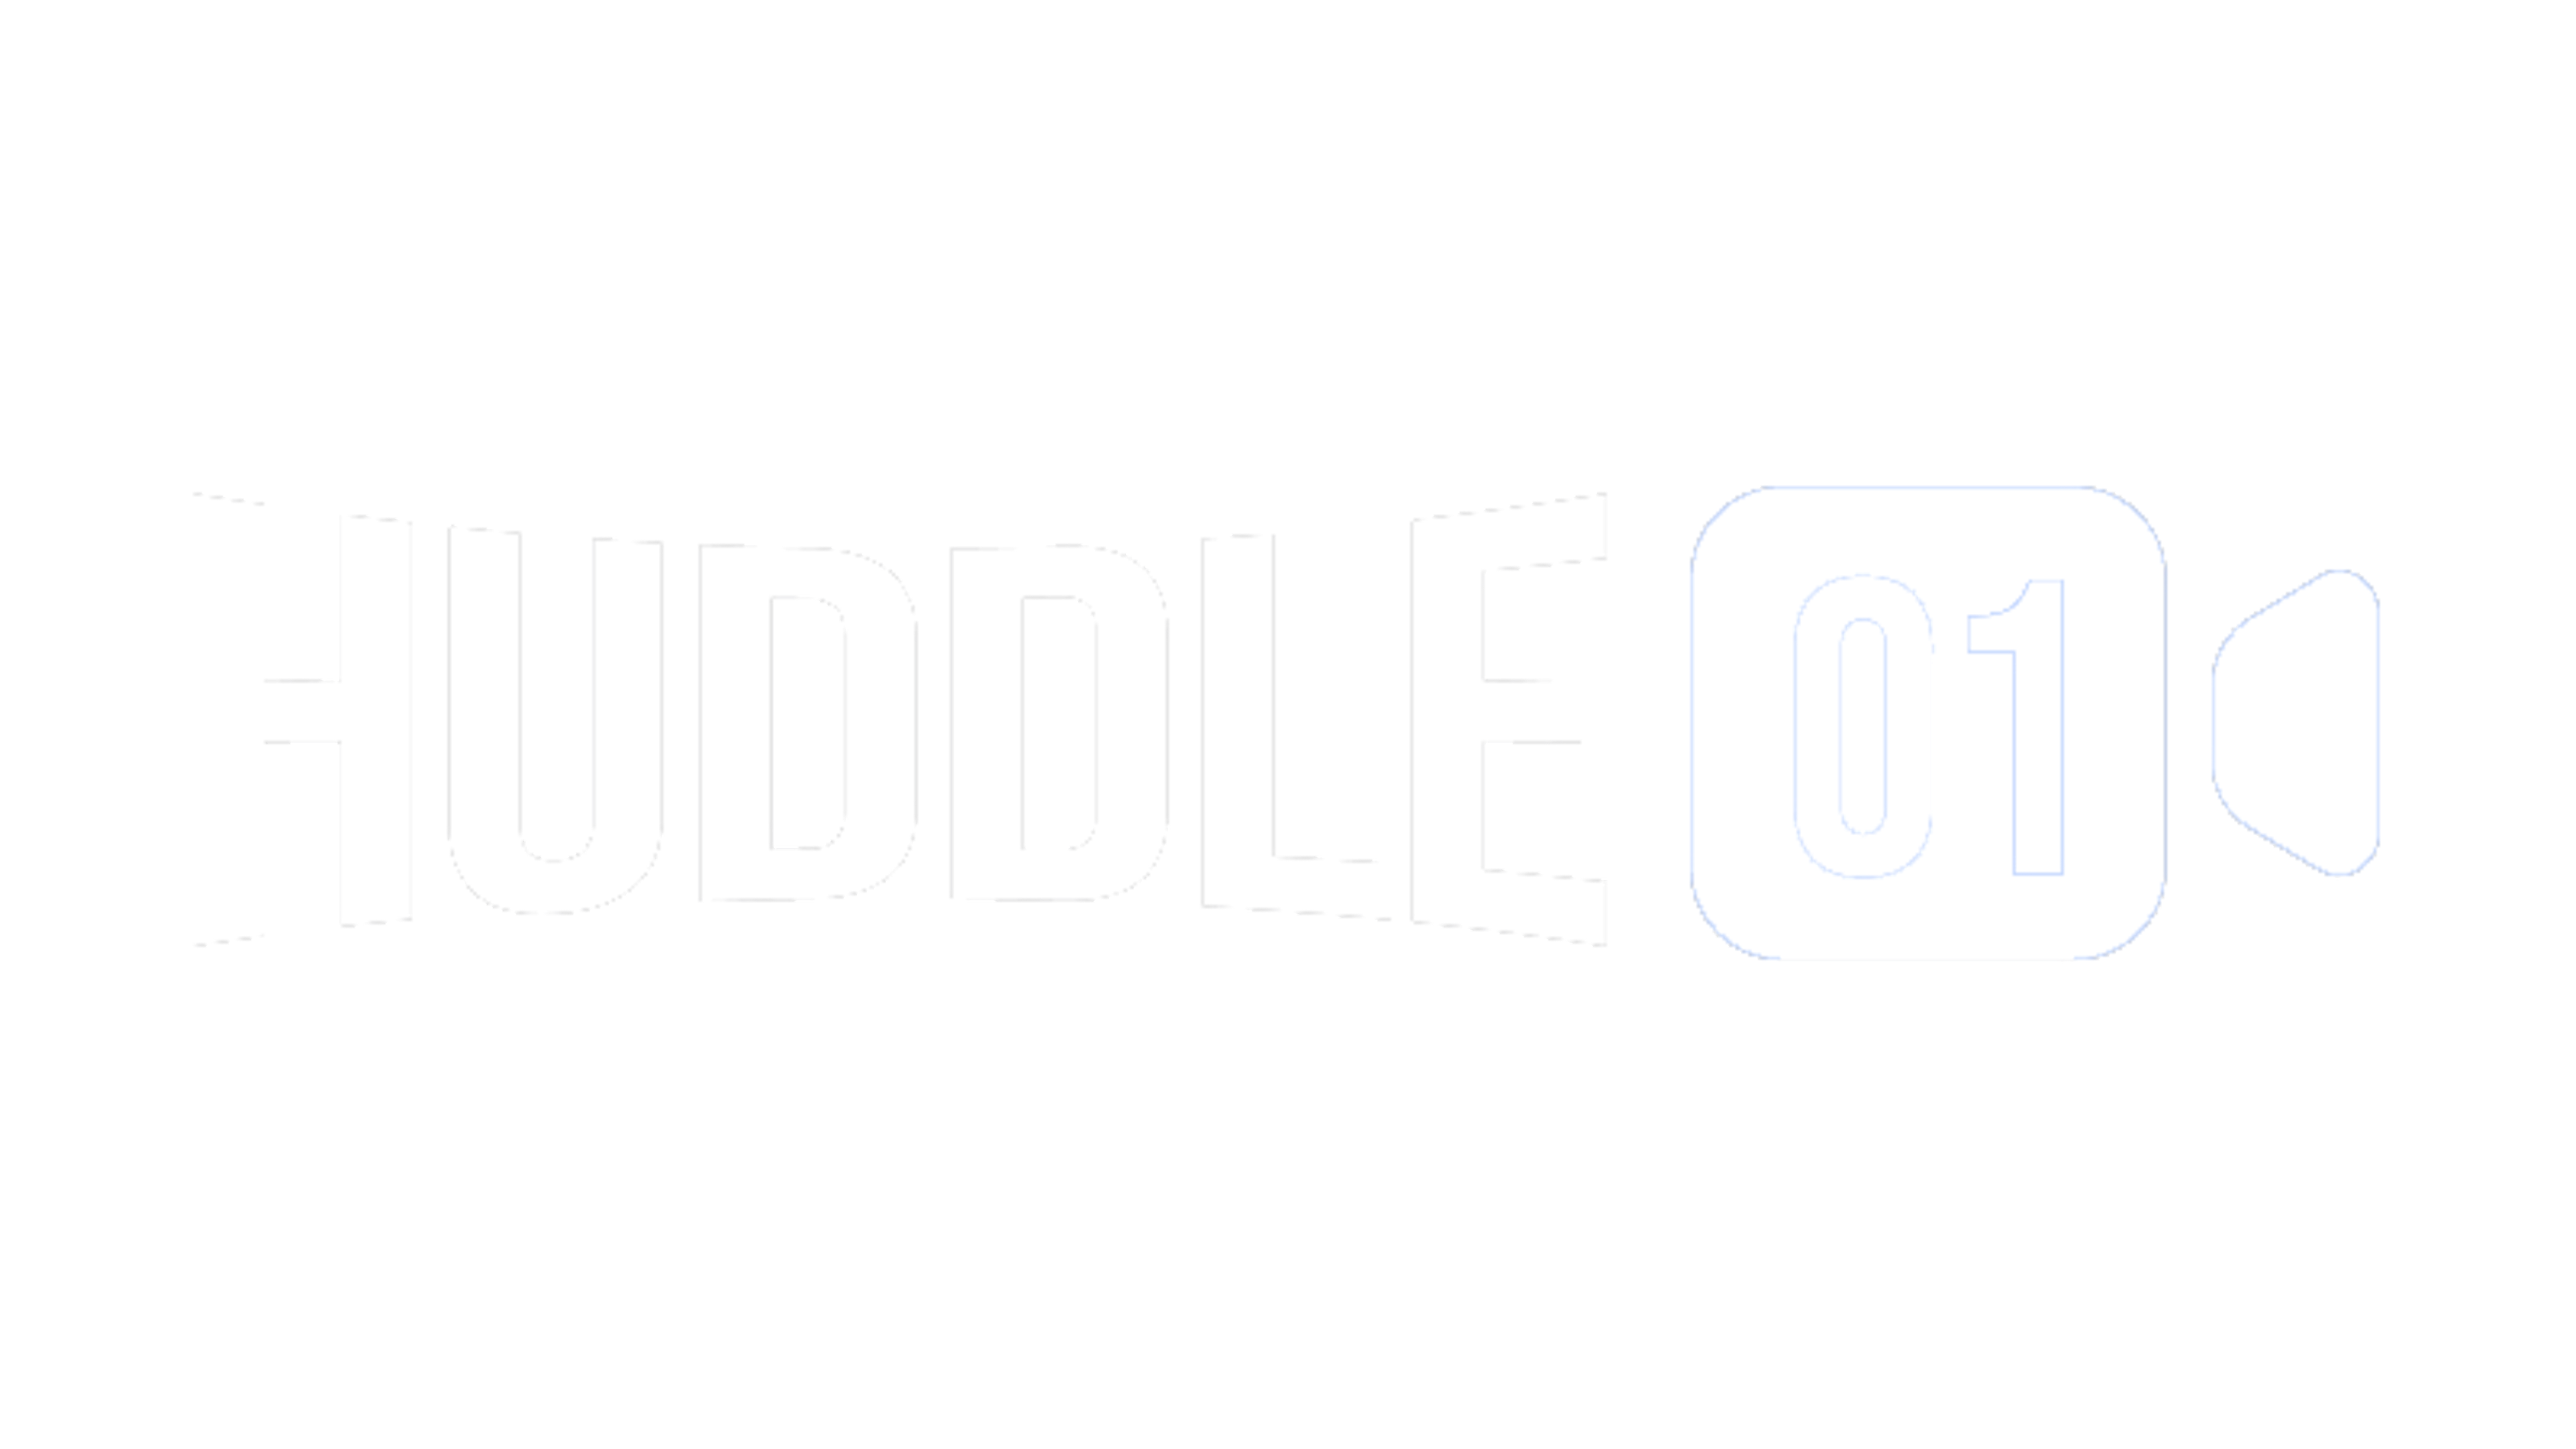 Huddle01 Logo